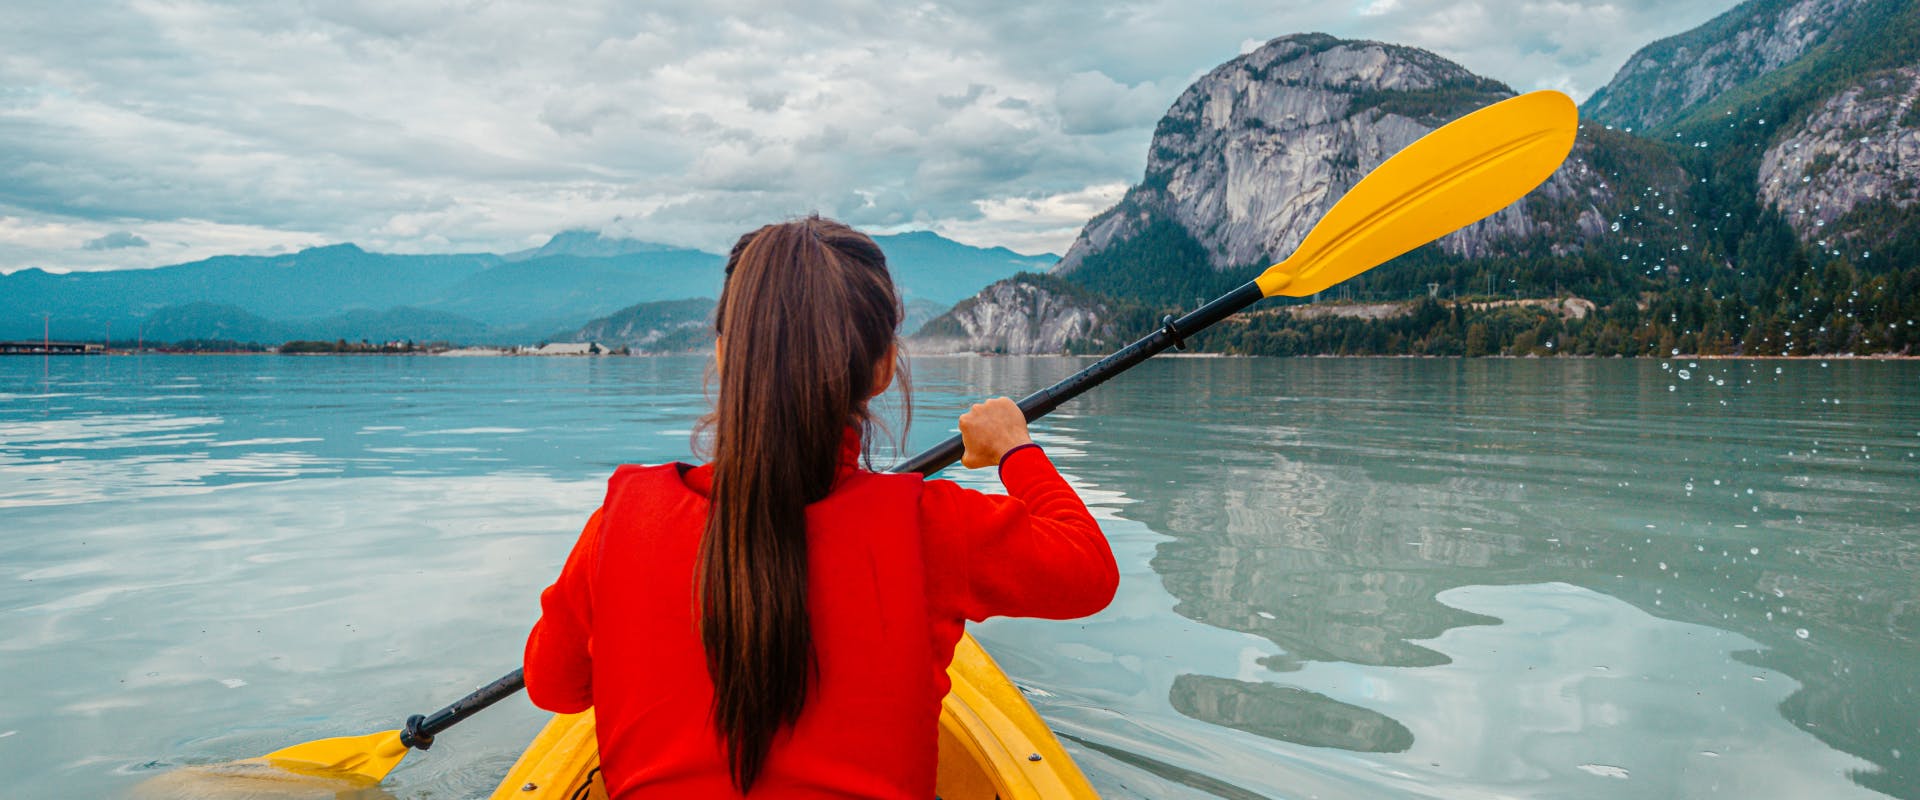 A woman kayaks across a lake.